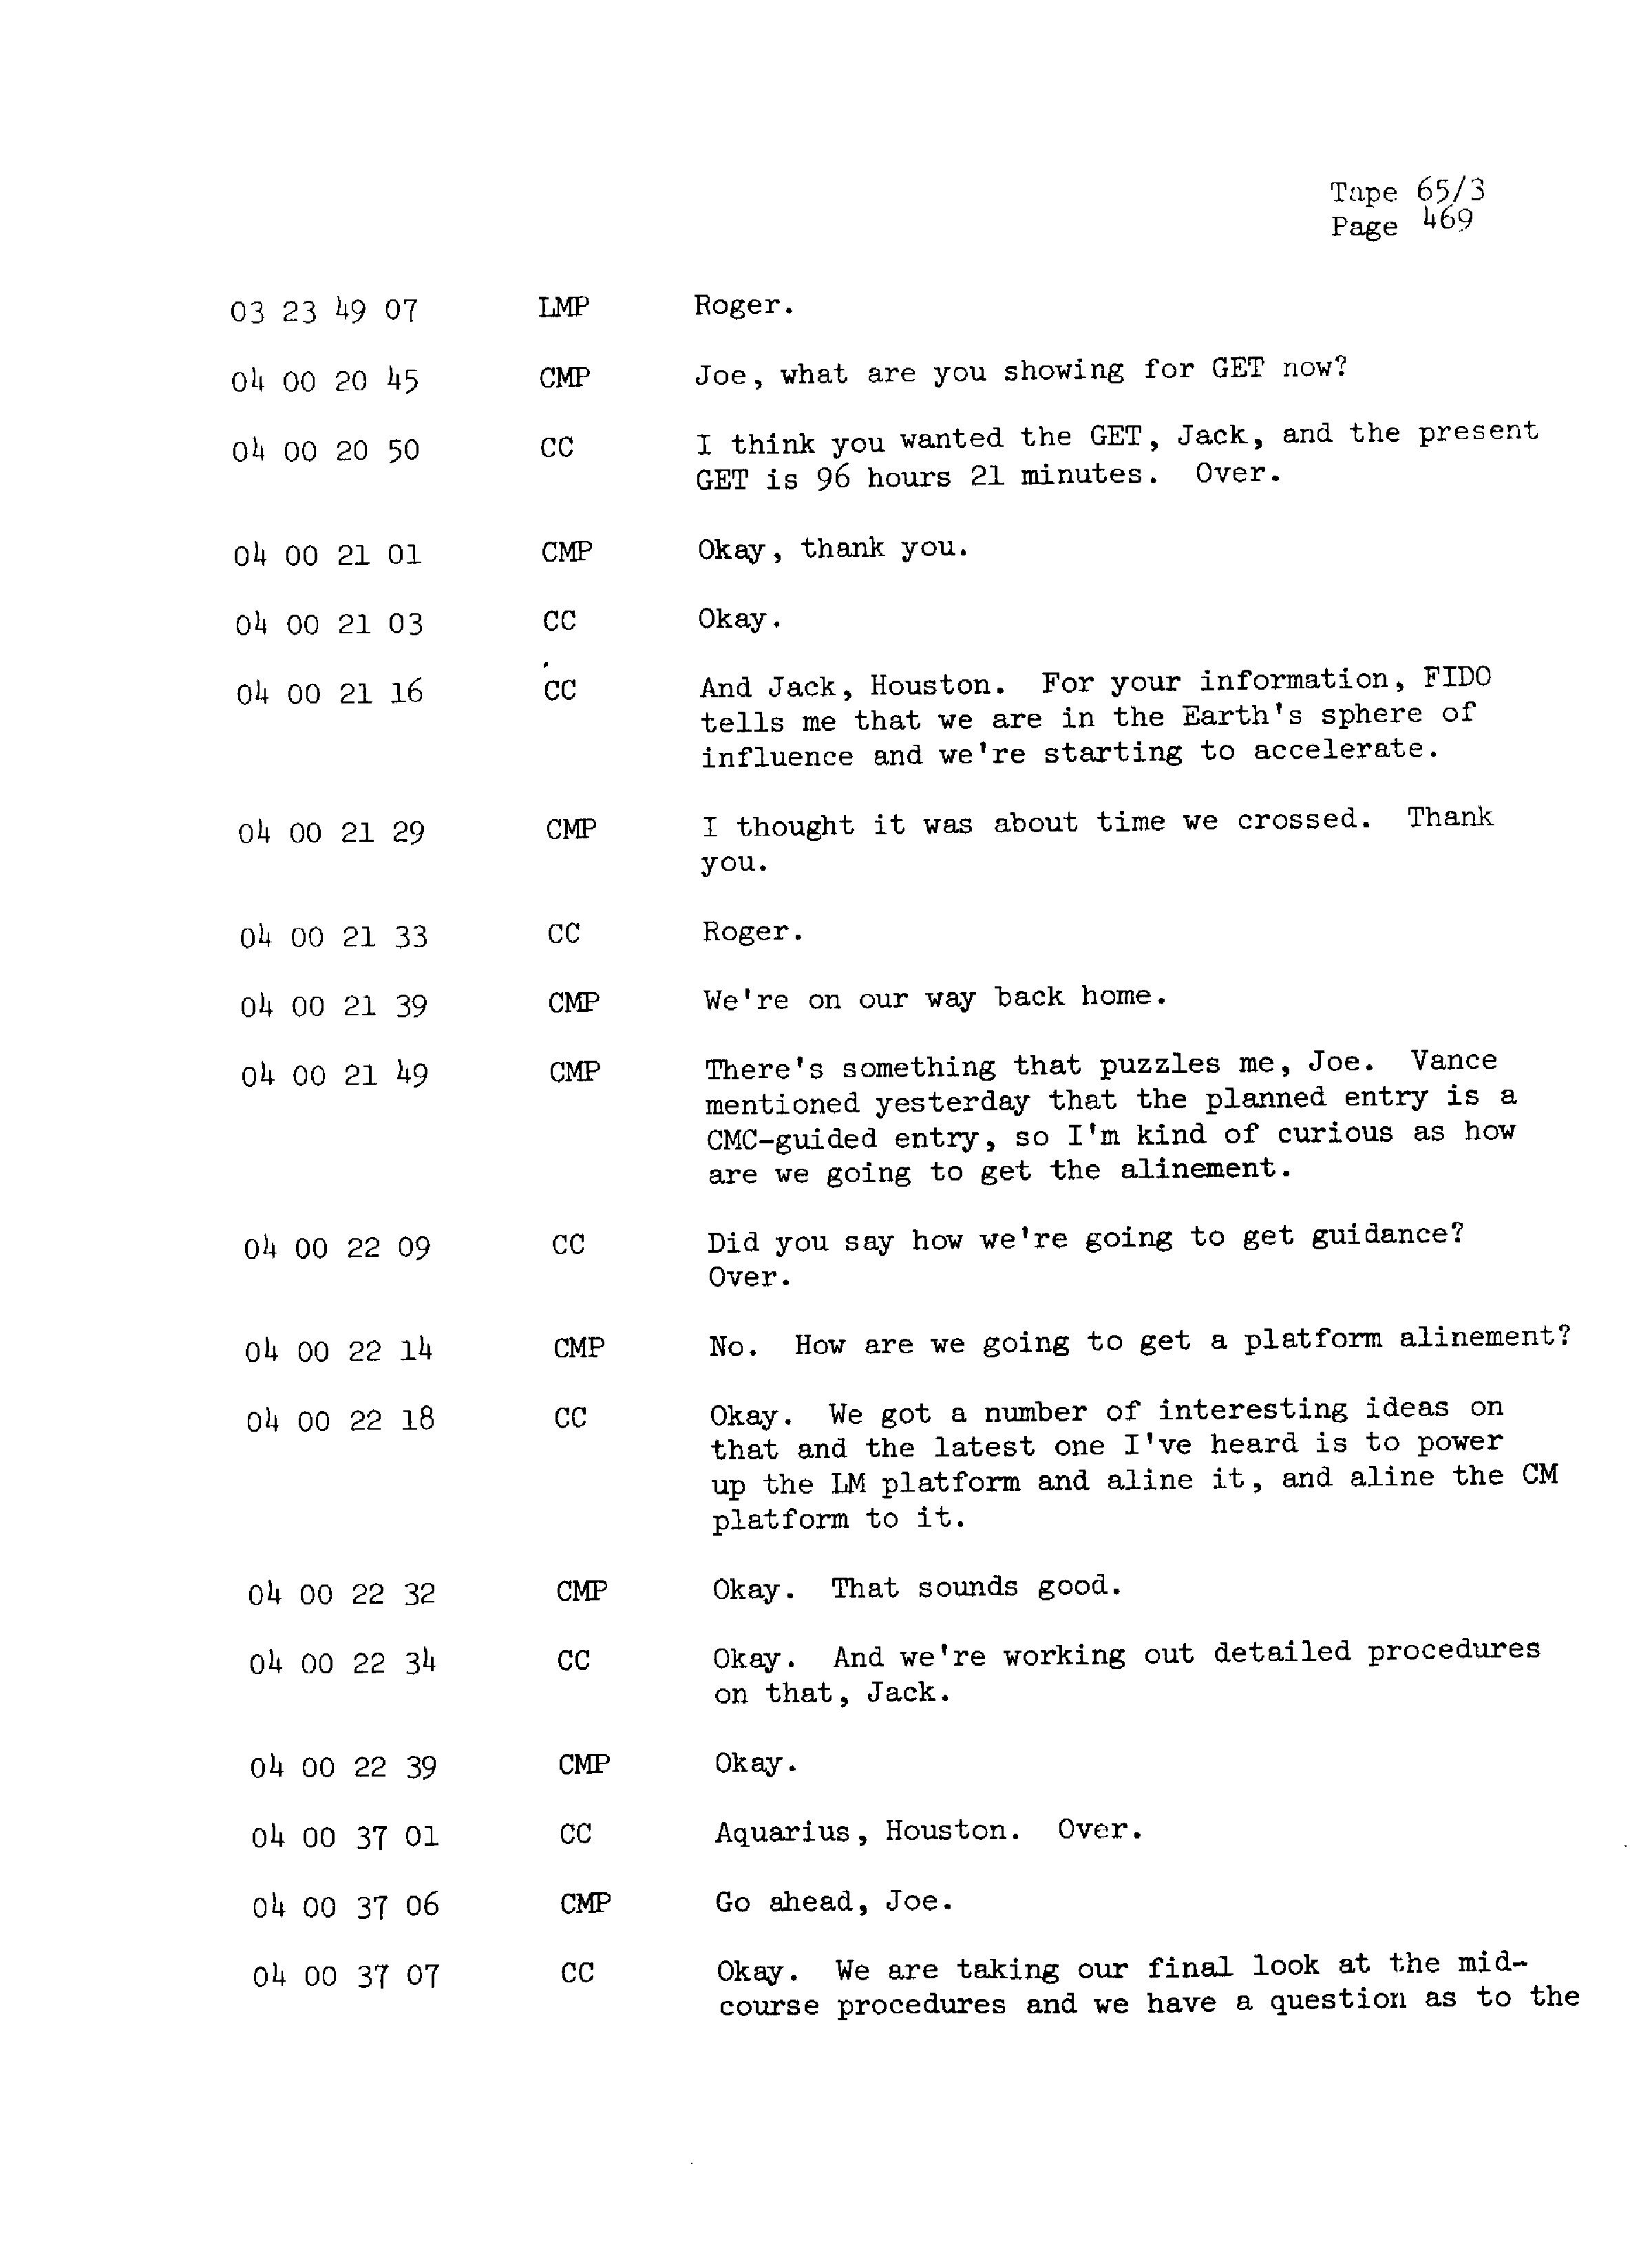 Page 476 of Apollo 13’s original transcript